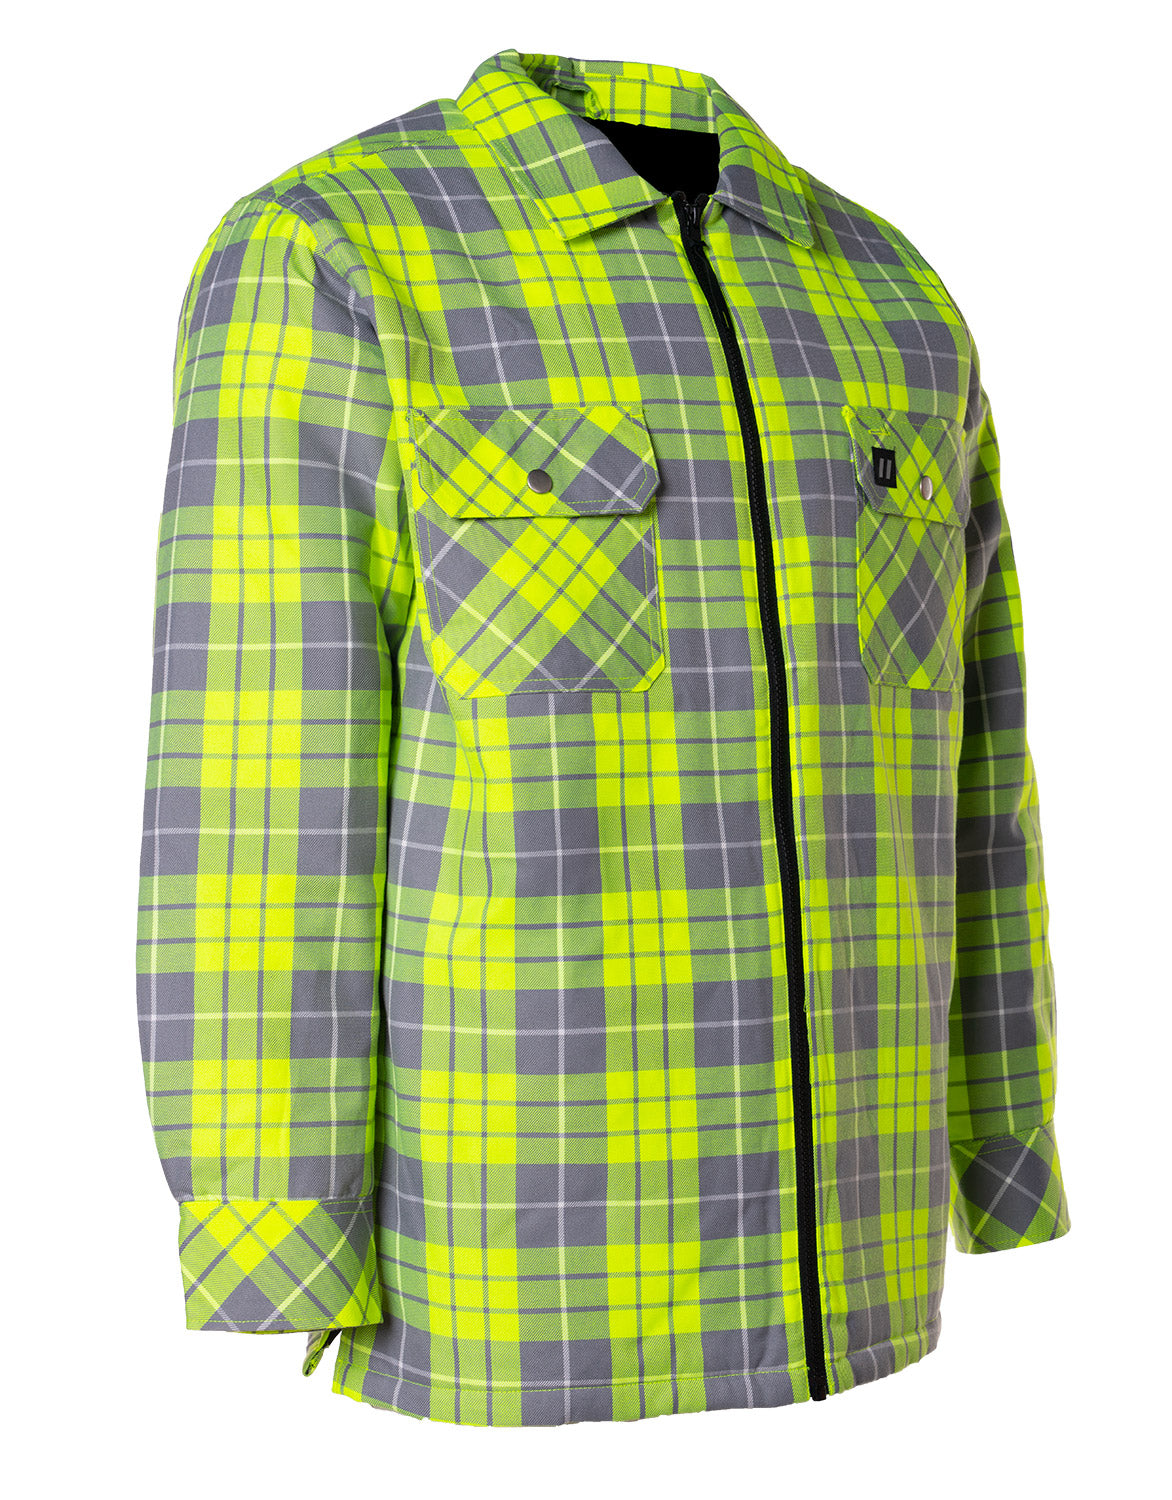 Veste chemise en flanelle matelassée à carreaux citron vert haute visibilité avec fermeture éclair sur le devant